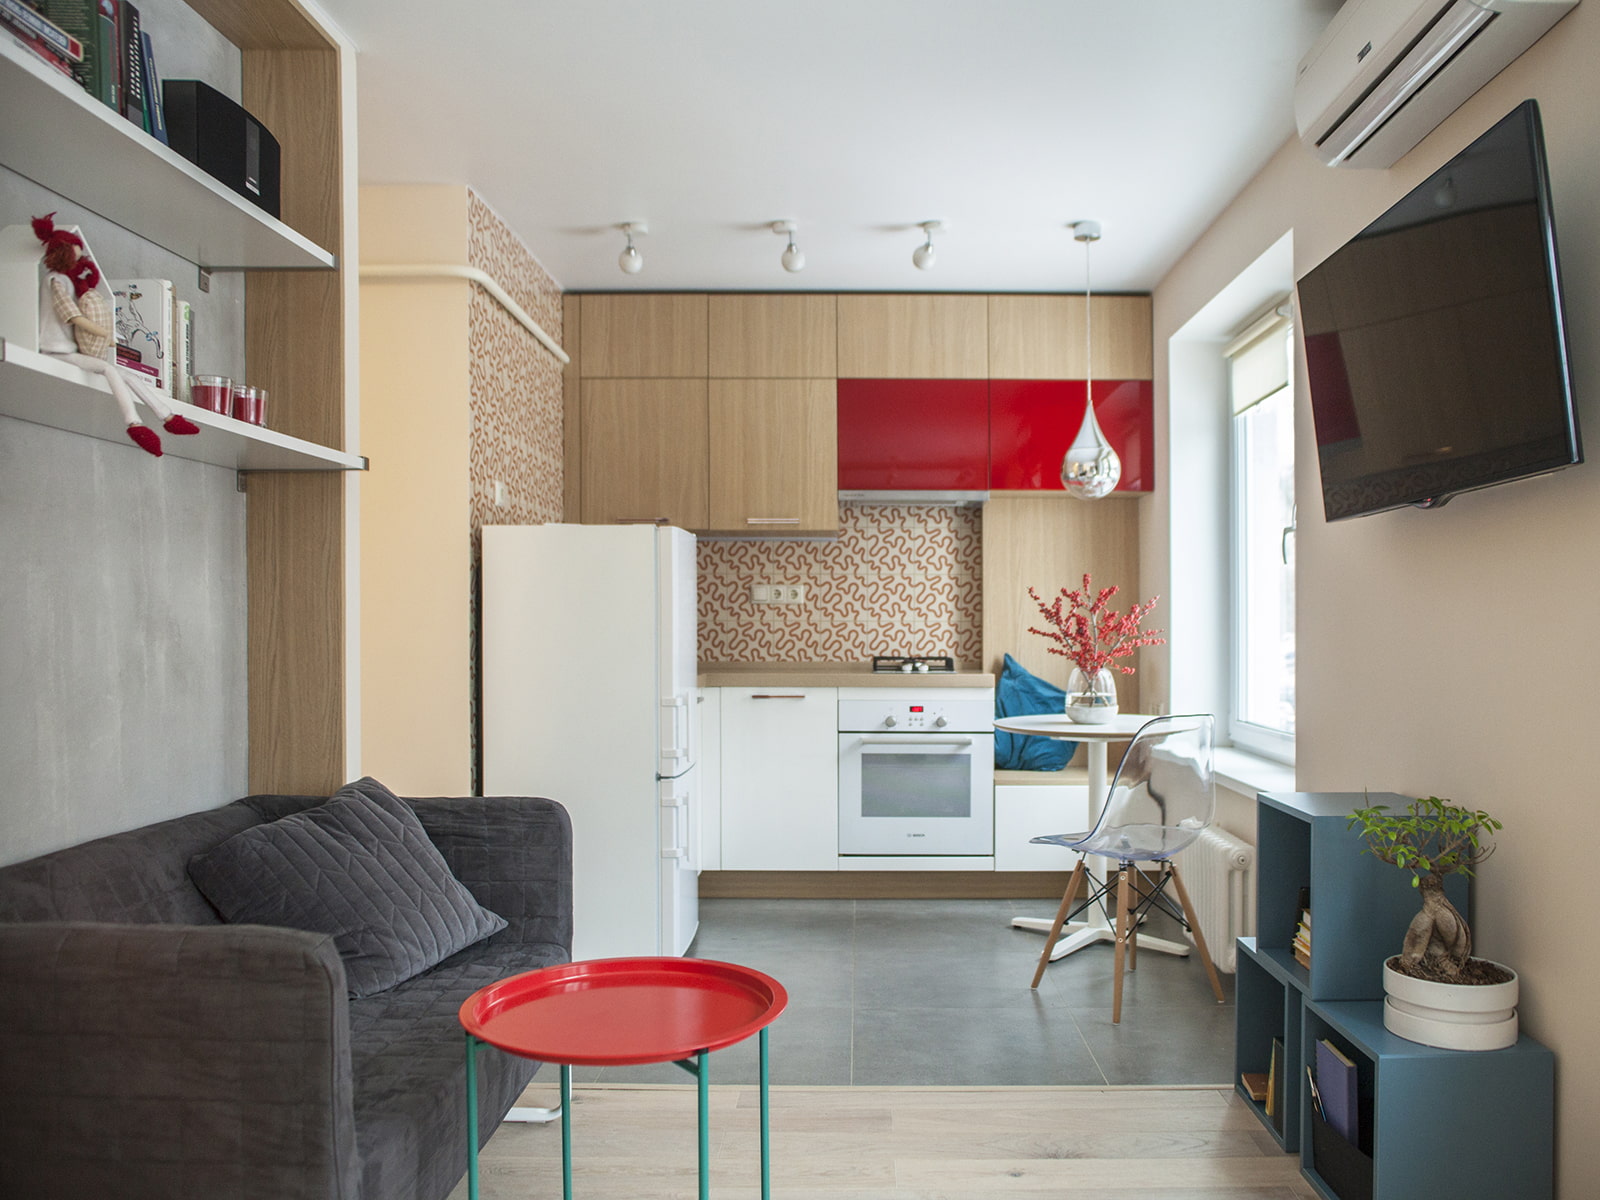 Кухня-столовая: дизайн интерьера, 100 фото планировок площадью 15-20 кв.м.